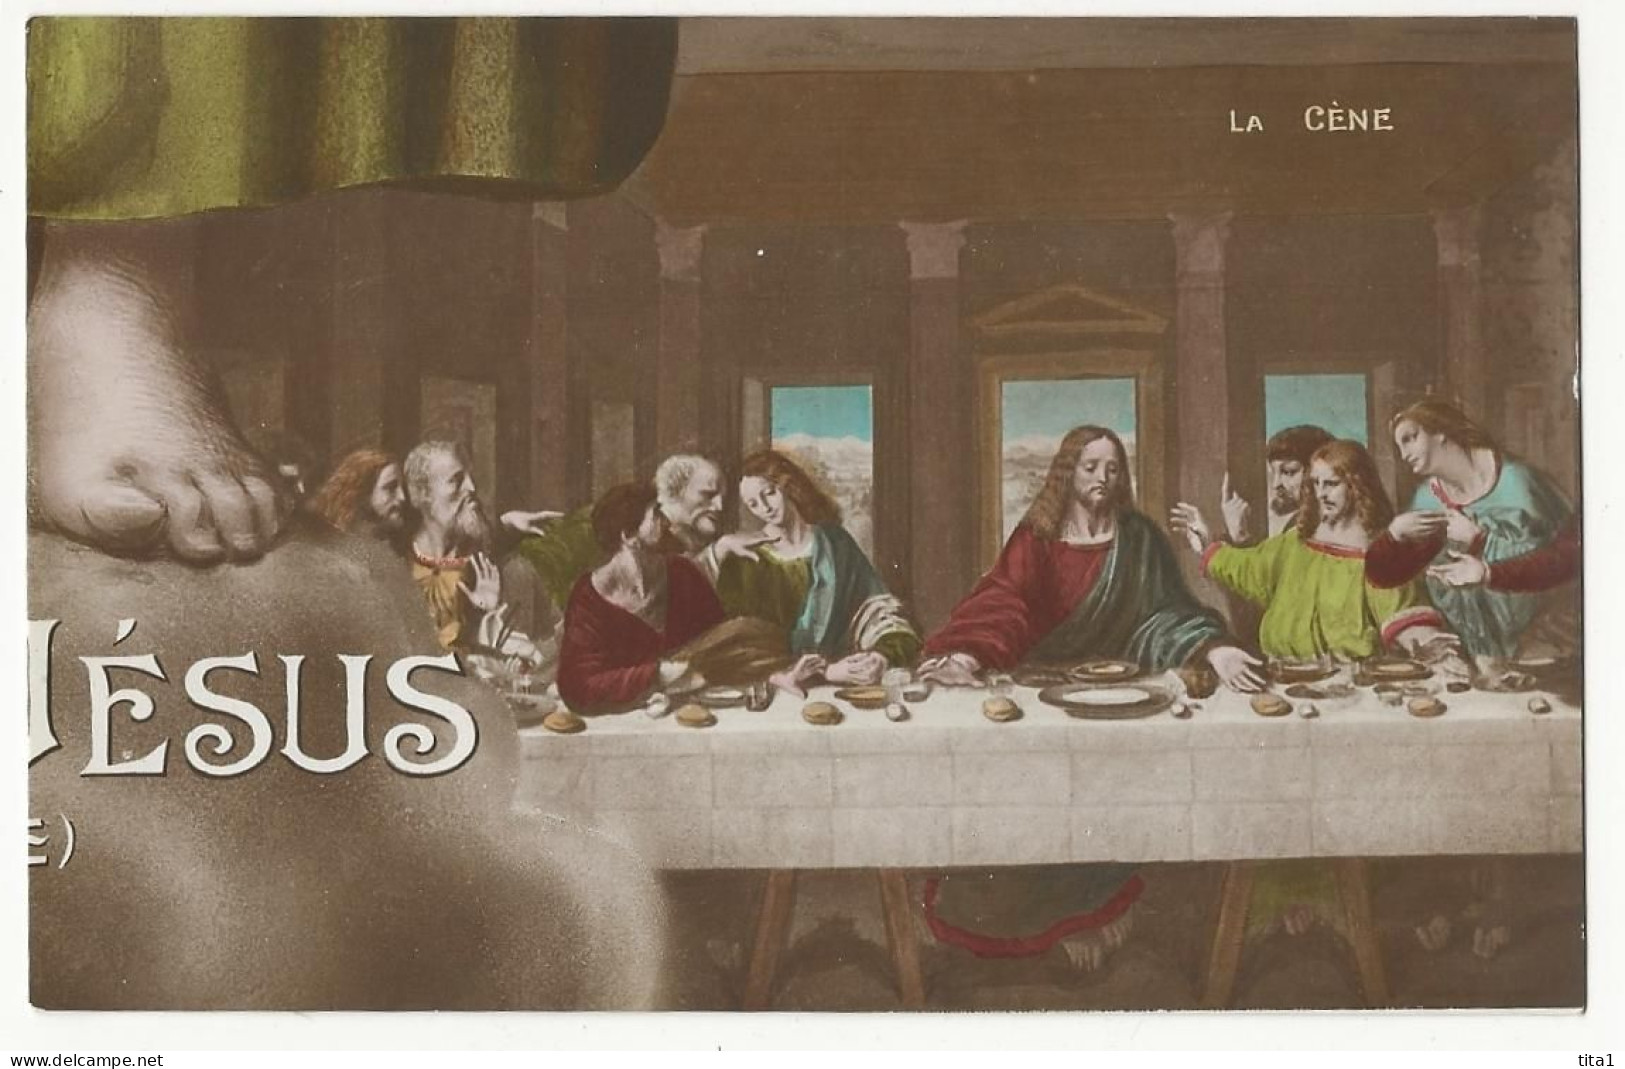 La vie publique de jésus - Puzzle de 10 cartes complet